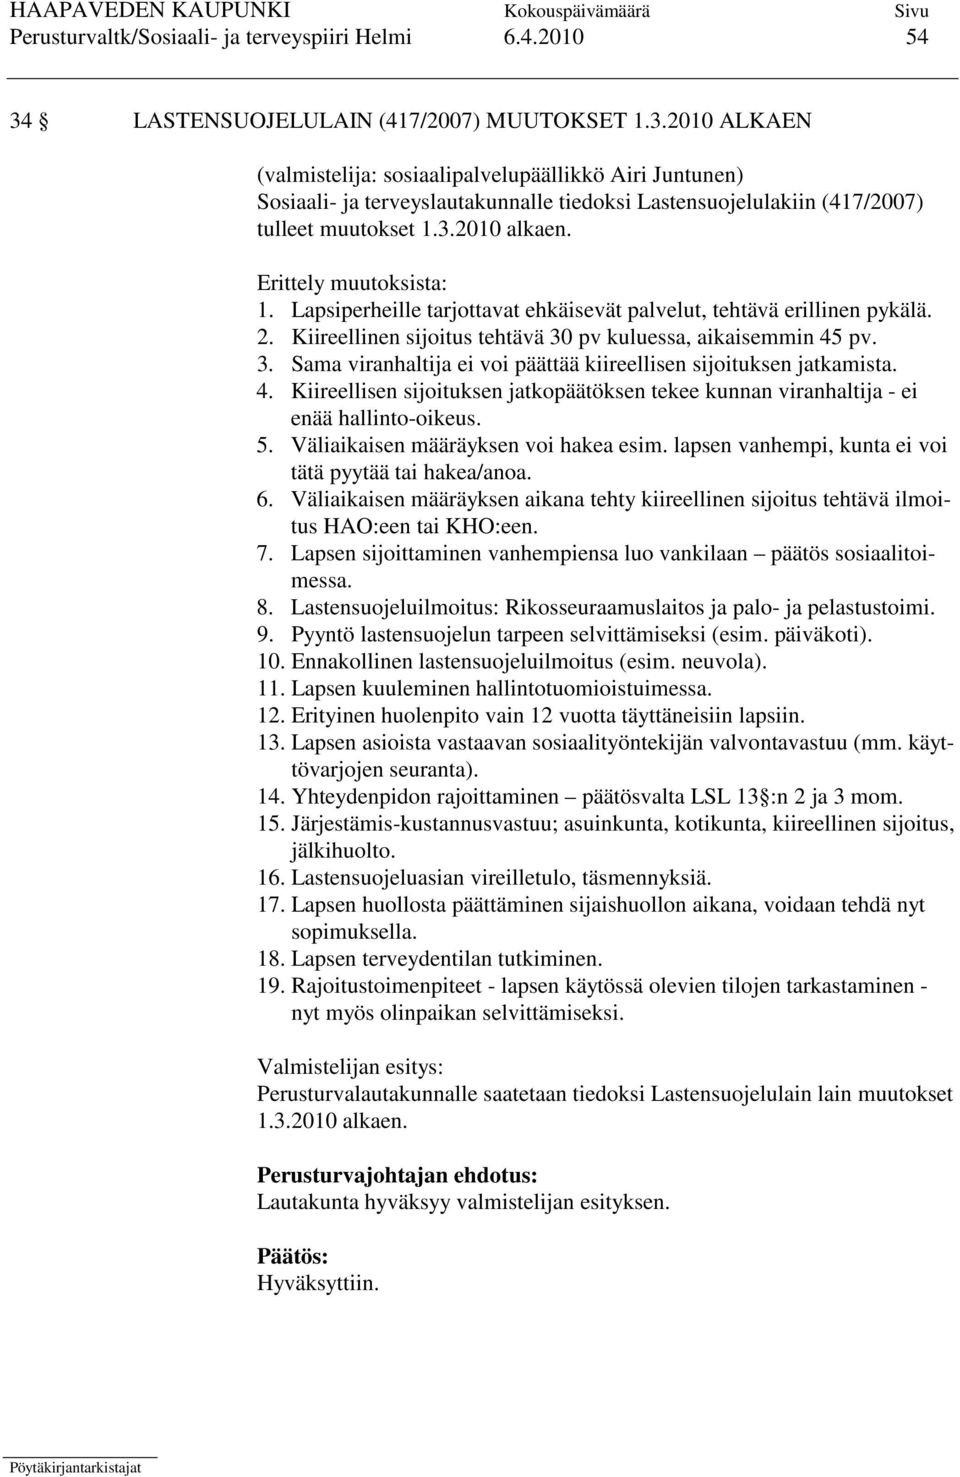 2010 ALKAEN (valmistelija: sosiaalipalvelupäällikkö Airi Juntunen) Sosiaali- ja terveyslautakunnalle tiedoksi Lastensuojelulakiin (417/2007) tulleet muutokset 1.3.2010 alkaen. Erittely muutoksista: 1.